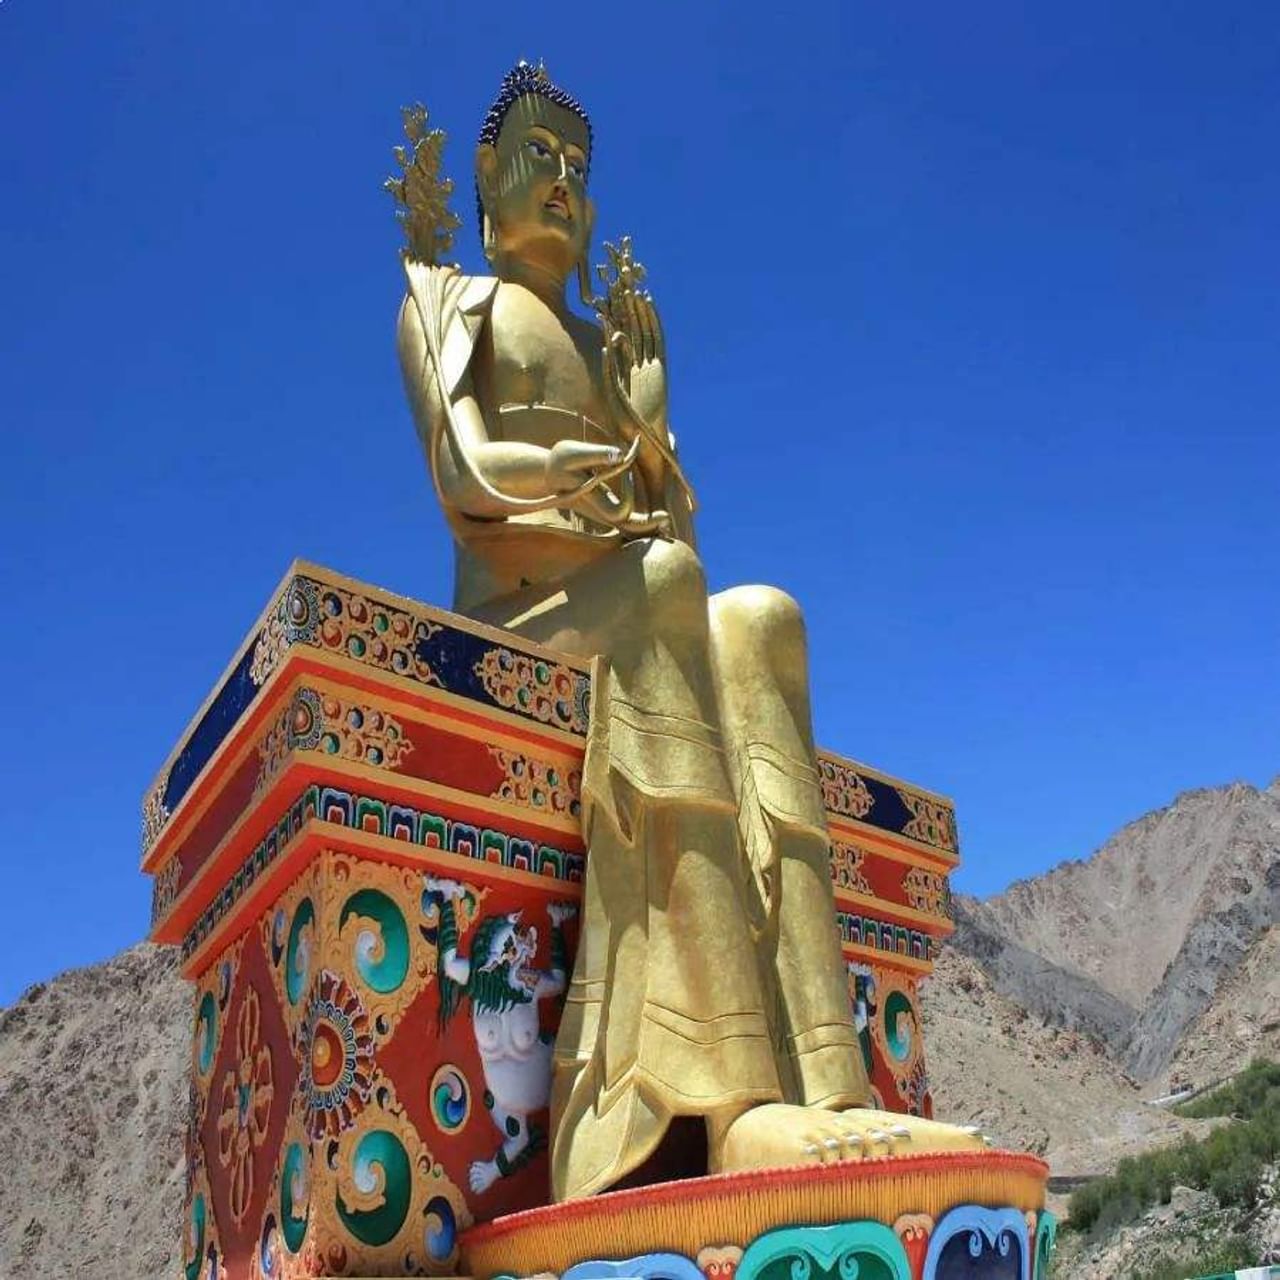 લેહ-લદ્દાખ(Leh-Ladakh trip) ભારતના જાણીતા પ્રવાસનસ્થળમાંથી એક છે.લેહ-લદ્દાખ ઉનાળામાં પ્રવાસીઓની સંખ્યા વધી જાય છે.જો તમે પહેલીવાર લેહ-લદ્દાખ ફરવા જાઓ છો તો તમારે કેટલીક વાતોનું ધ્યાન રાખવું પડશે.જાણી લો લેહ-લદ્દાખથી જોડાયેલી કેટલીક વાતો જેથી તમારી ટ્રીપ બને યાદગાર.